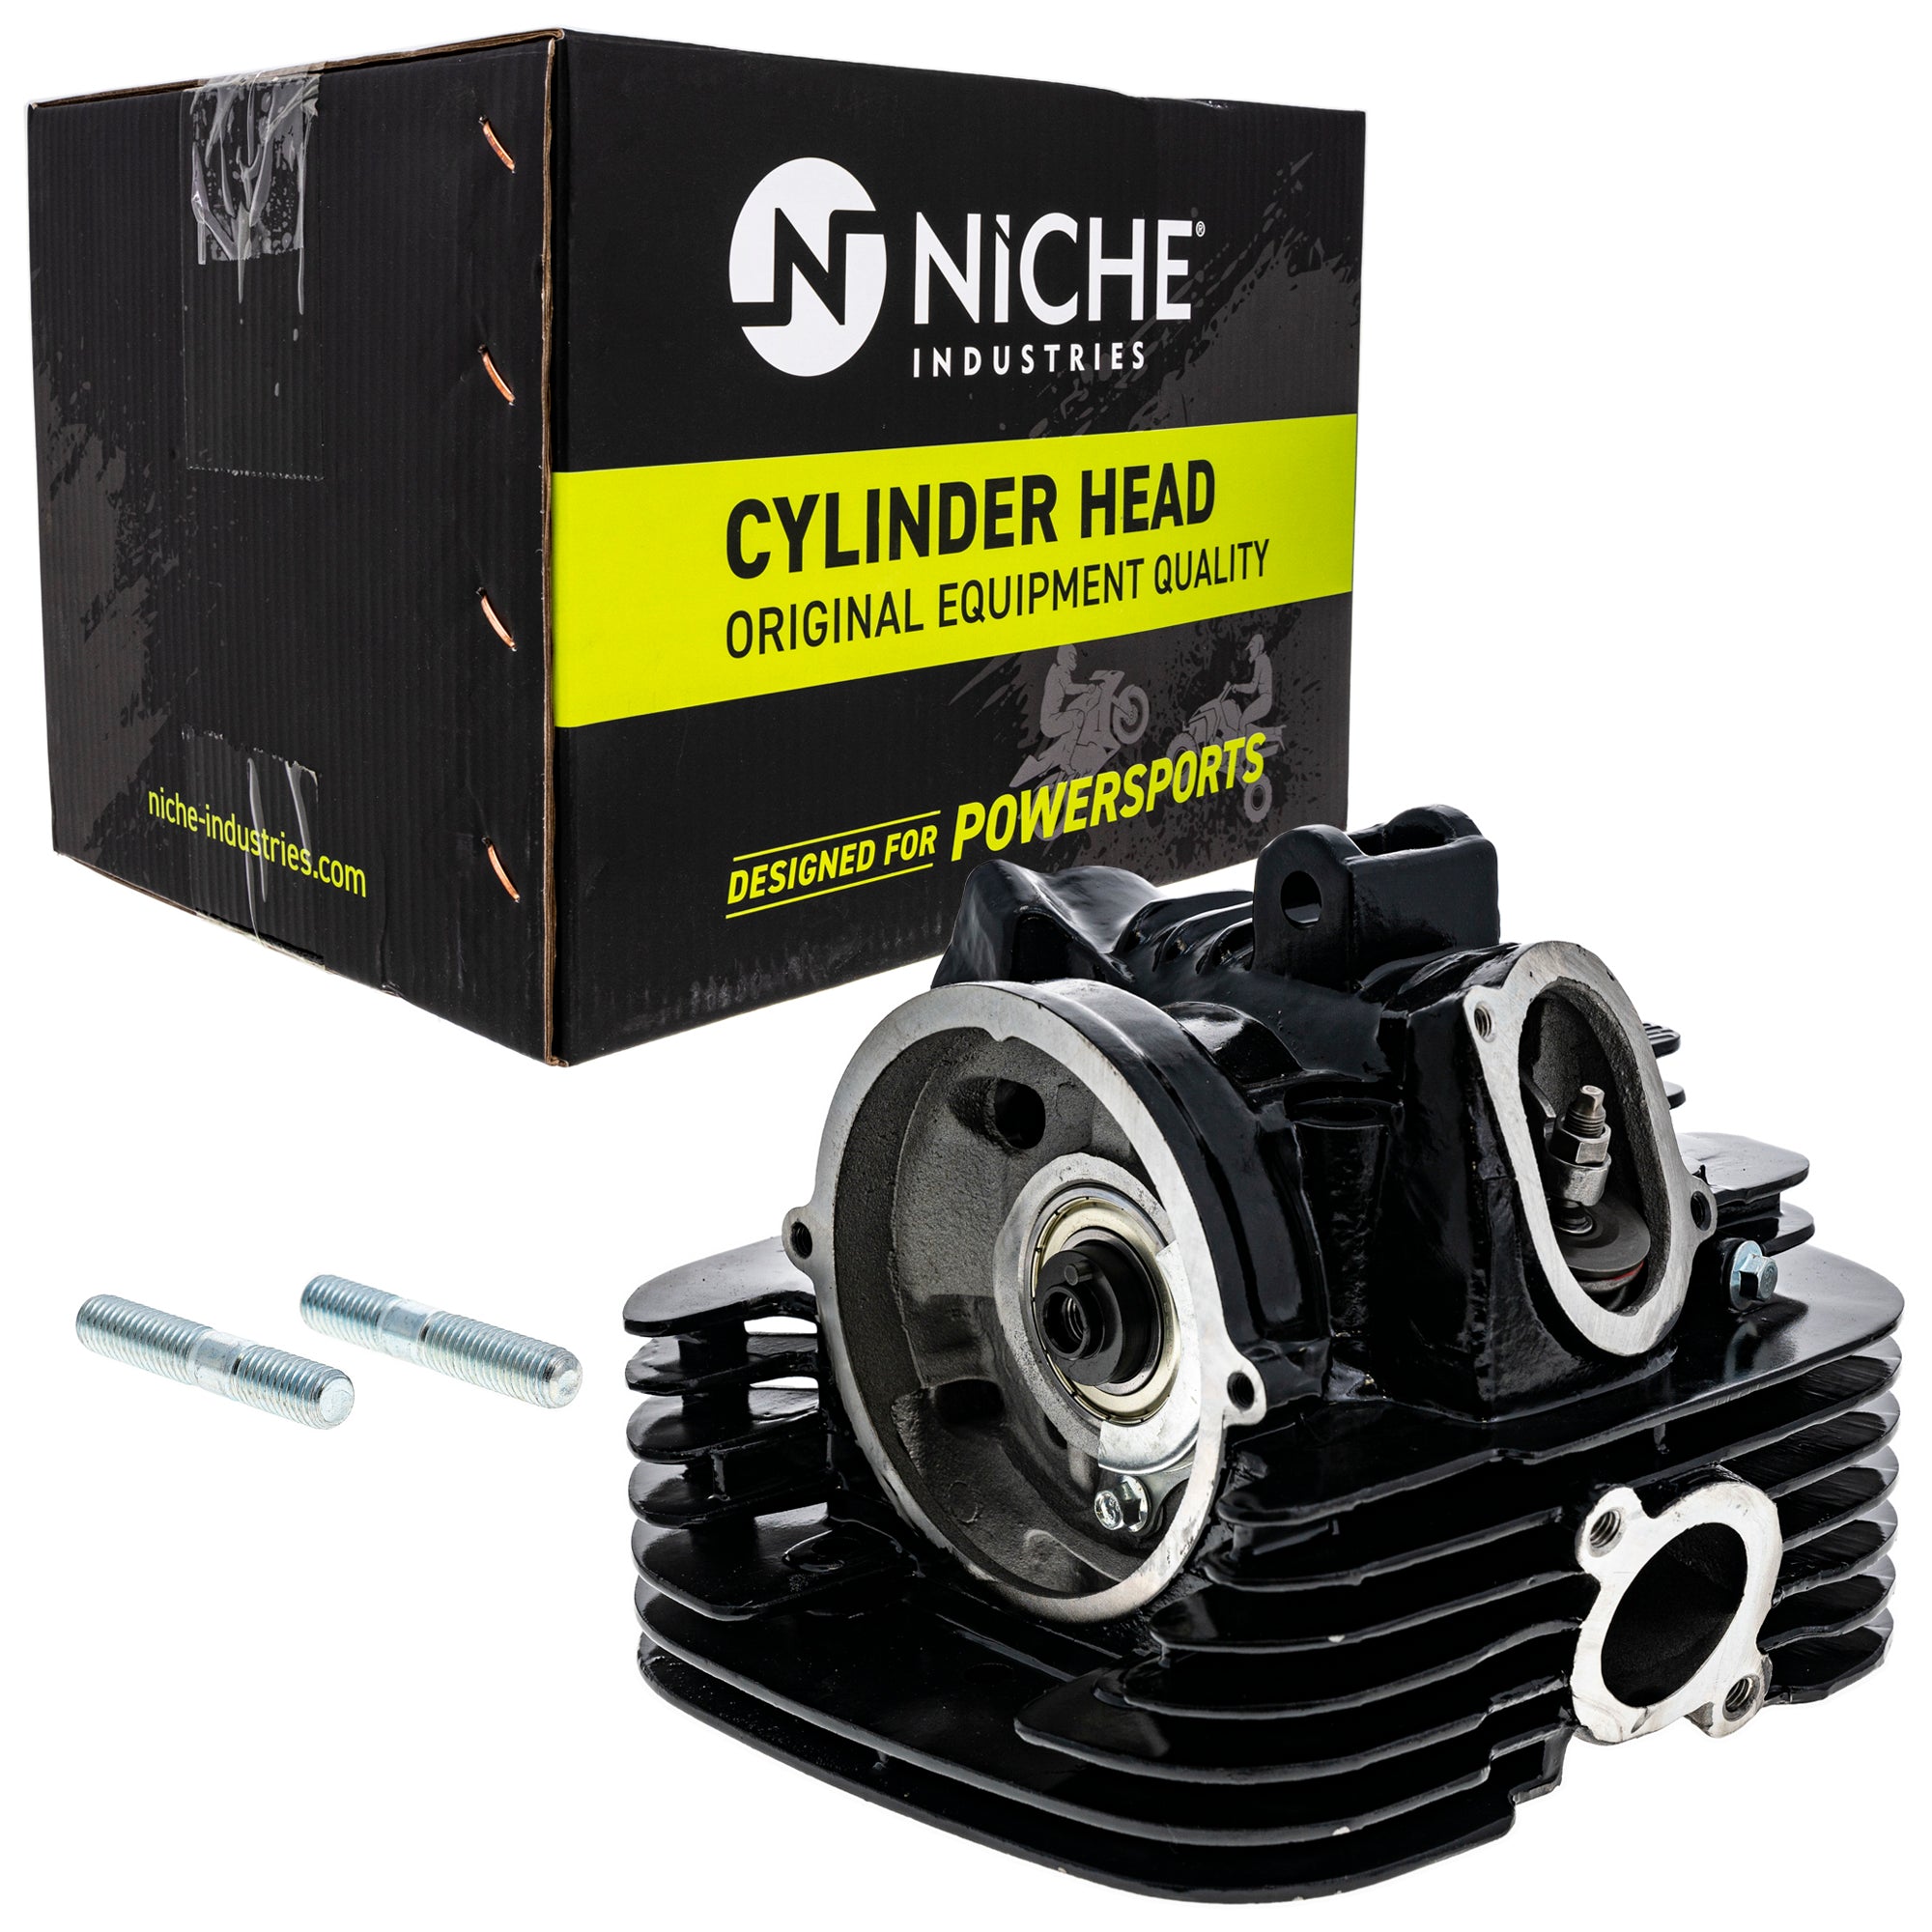 NICHE MK1001230 Cylinder Head Kit